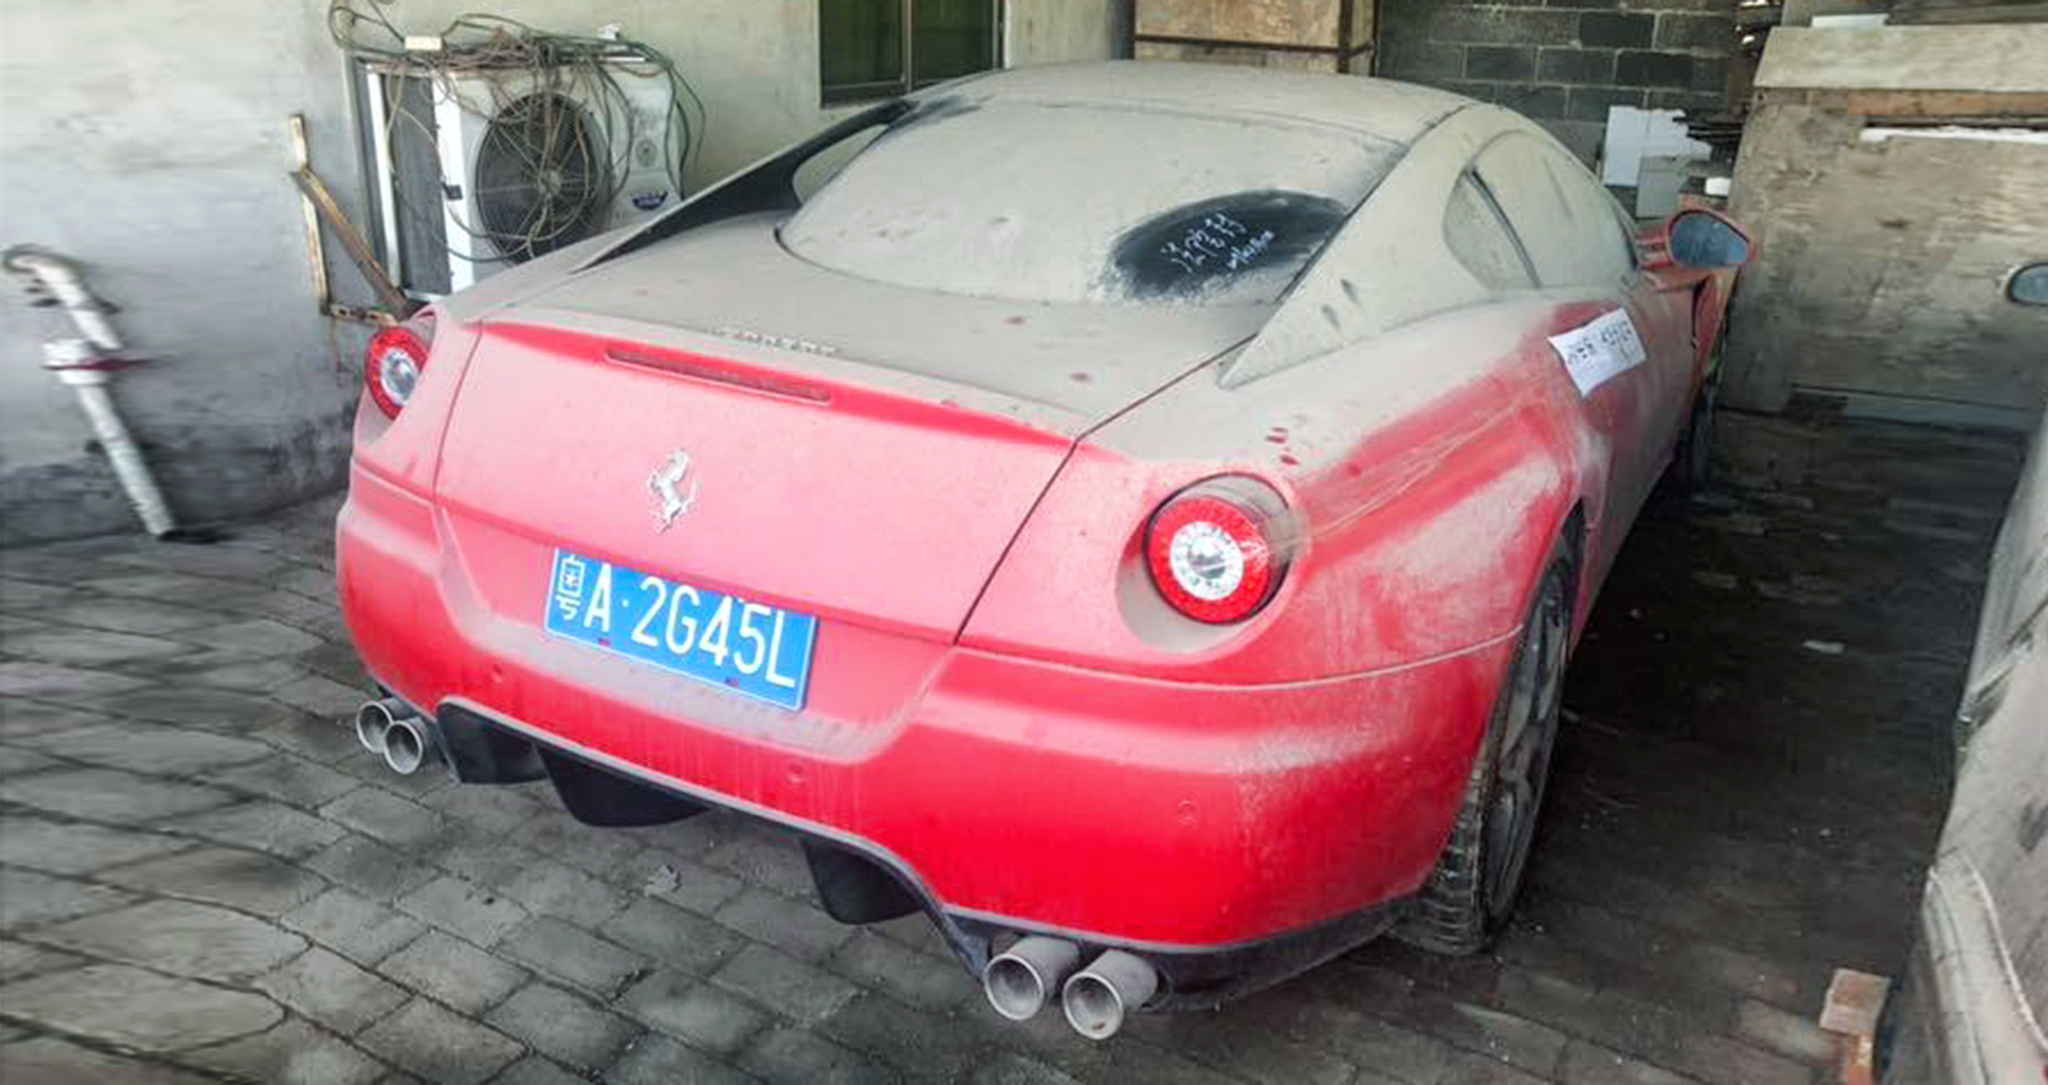 Siêu xe Ferrari 599 GTB giá “bèo” chỉ 250 USD tại Trung Quốc